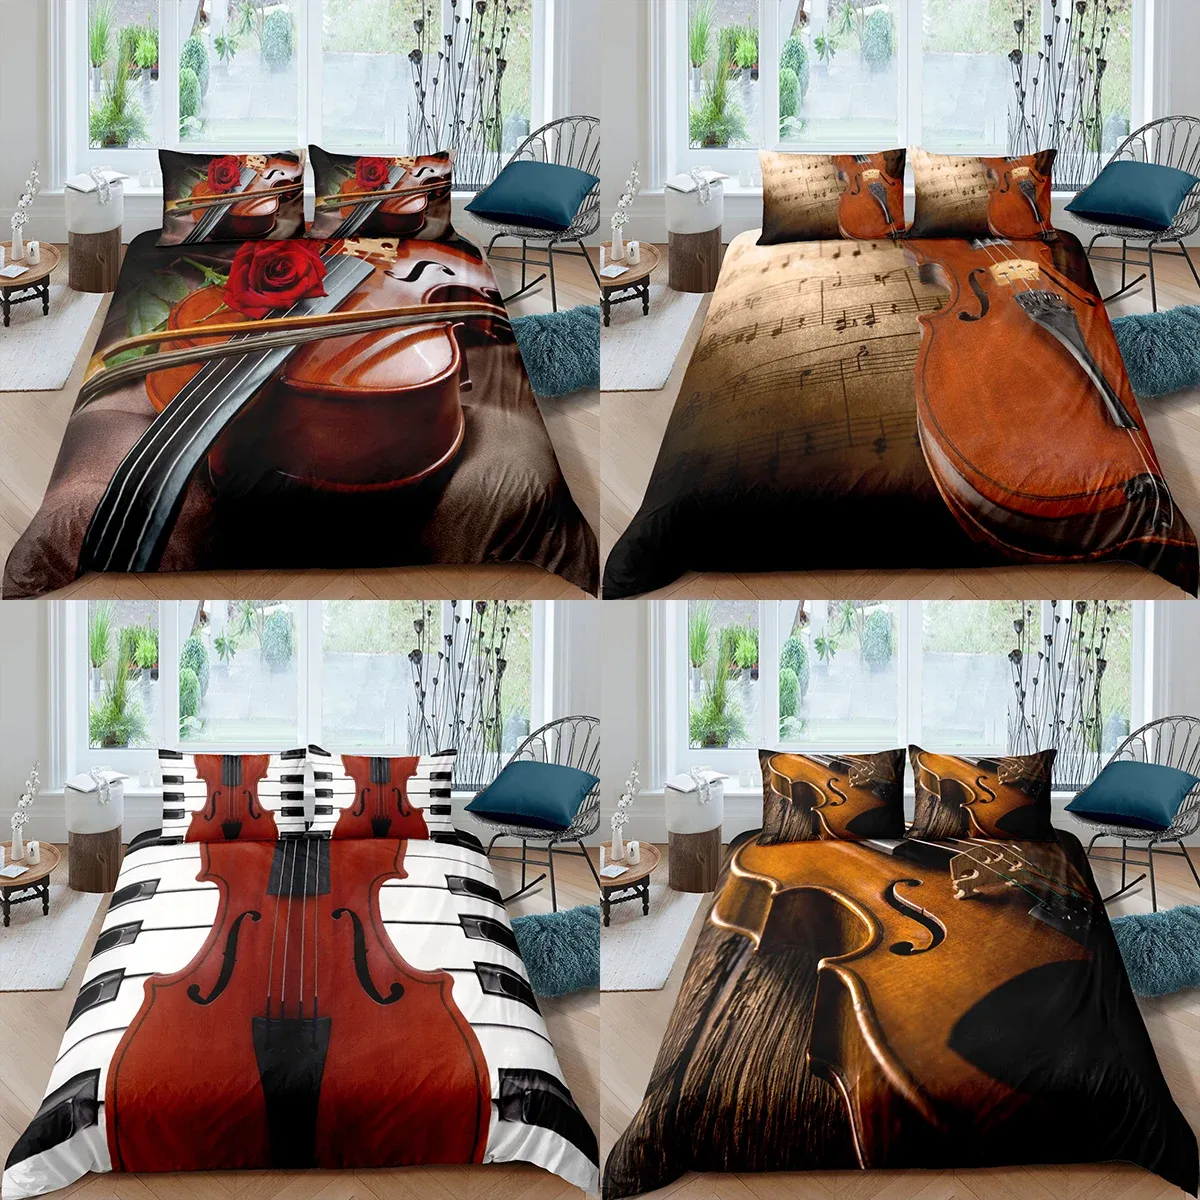 Uppsättningar Hemtextiler Luxury 3D Cello Däcke Cover Set och Pillow Case Kids Bedding Set AU/EU/UK/US Queen and King Size Bedding